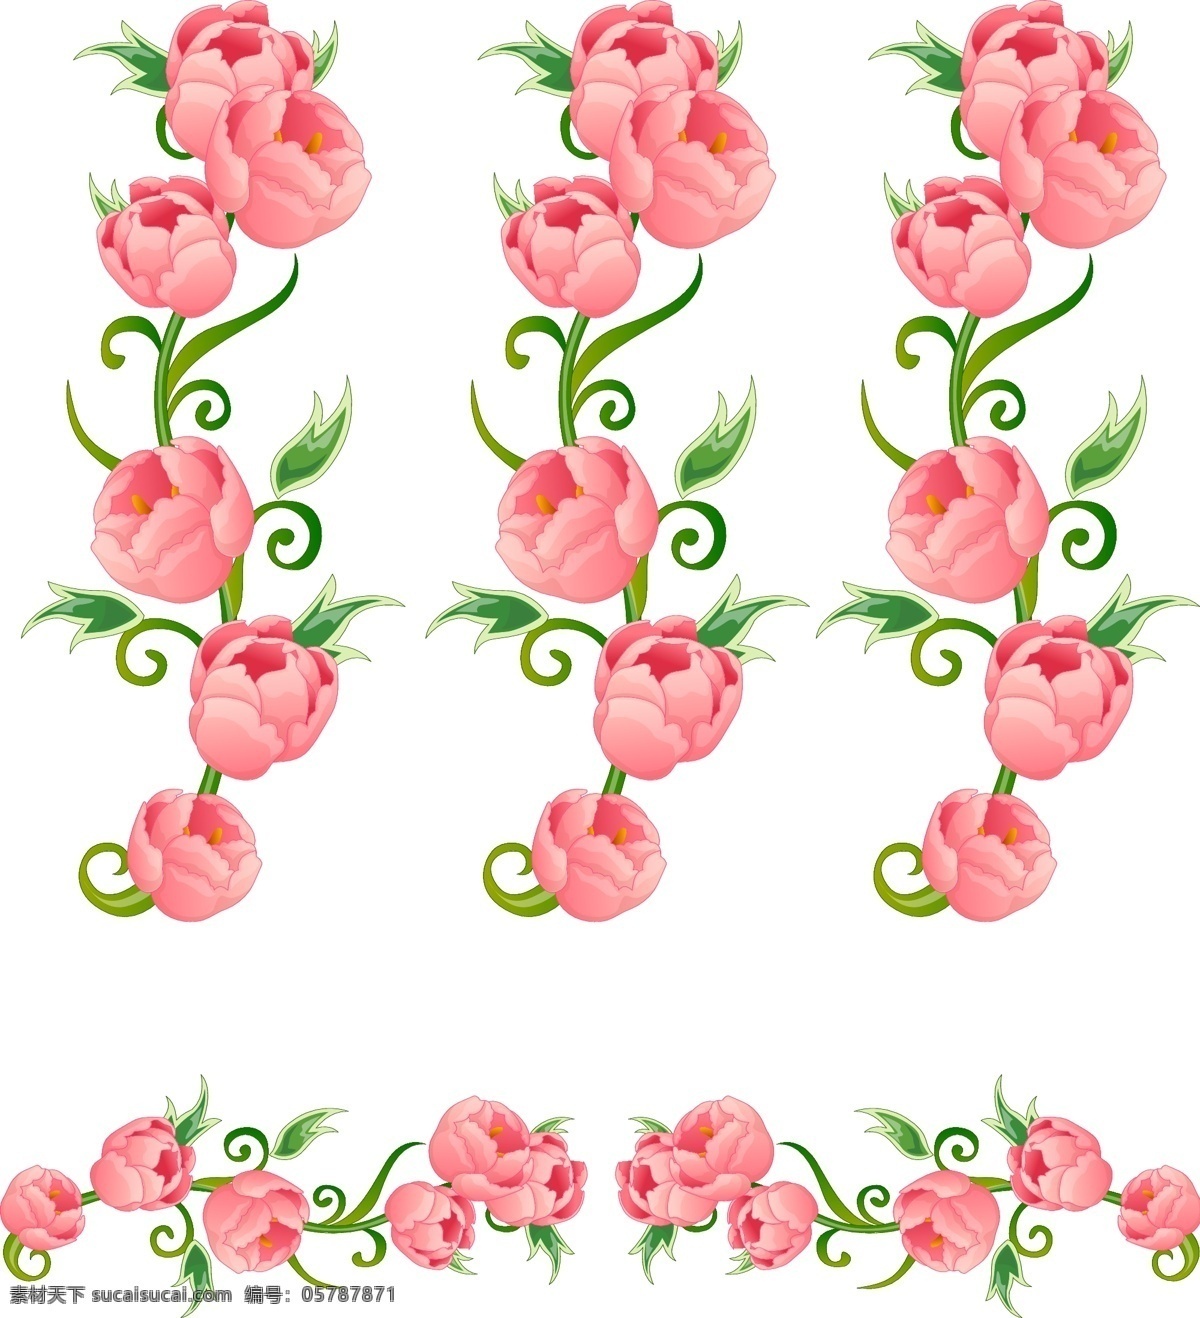 韩国 矢量 花边 ai格式 花朵 花卉 花纹 梦幻 模板 牡丹花 设计稿 矢量素材 装饰 叶子 植物 素材元素 源文件 矢量图